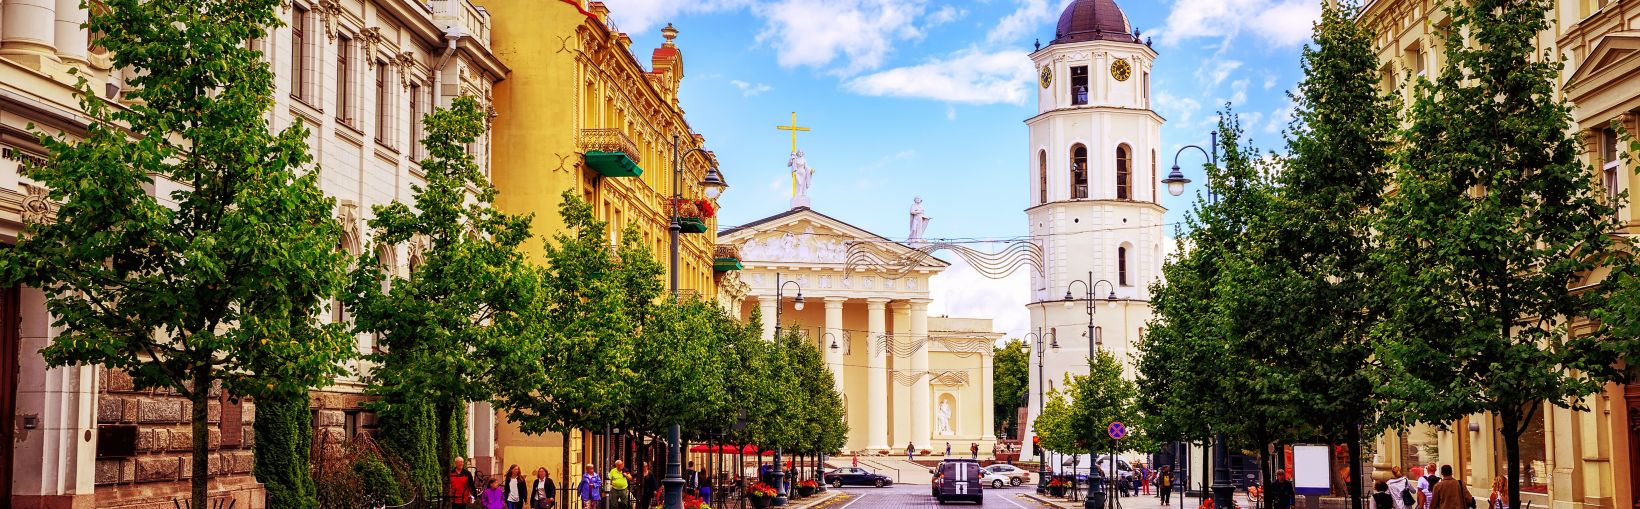 La place de la cathédrale, haut lieu de shopping et de restauration, vue depuis l’avenue Gediminas, l’artère principale de Vilnius, en Lituanie.